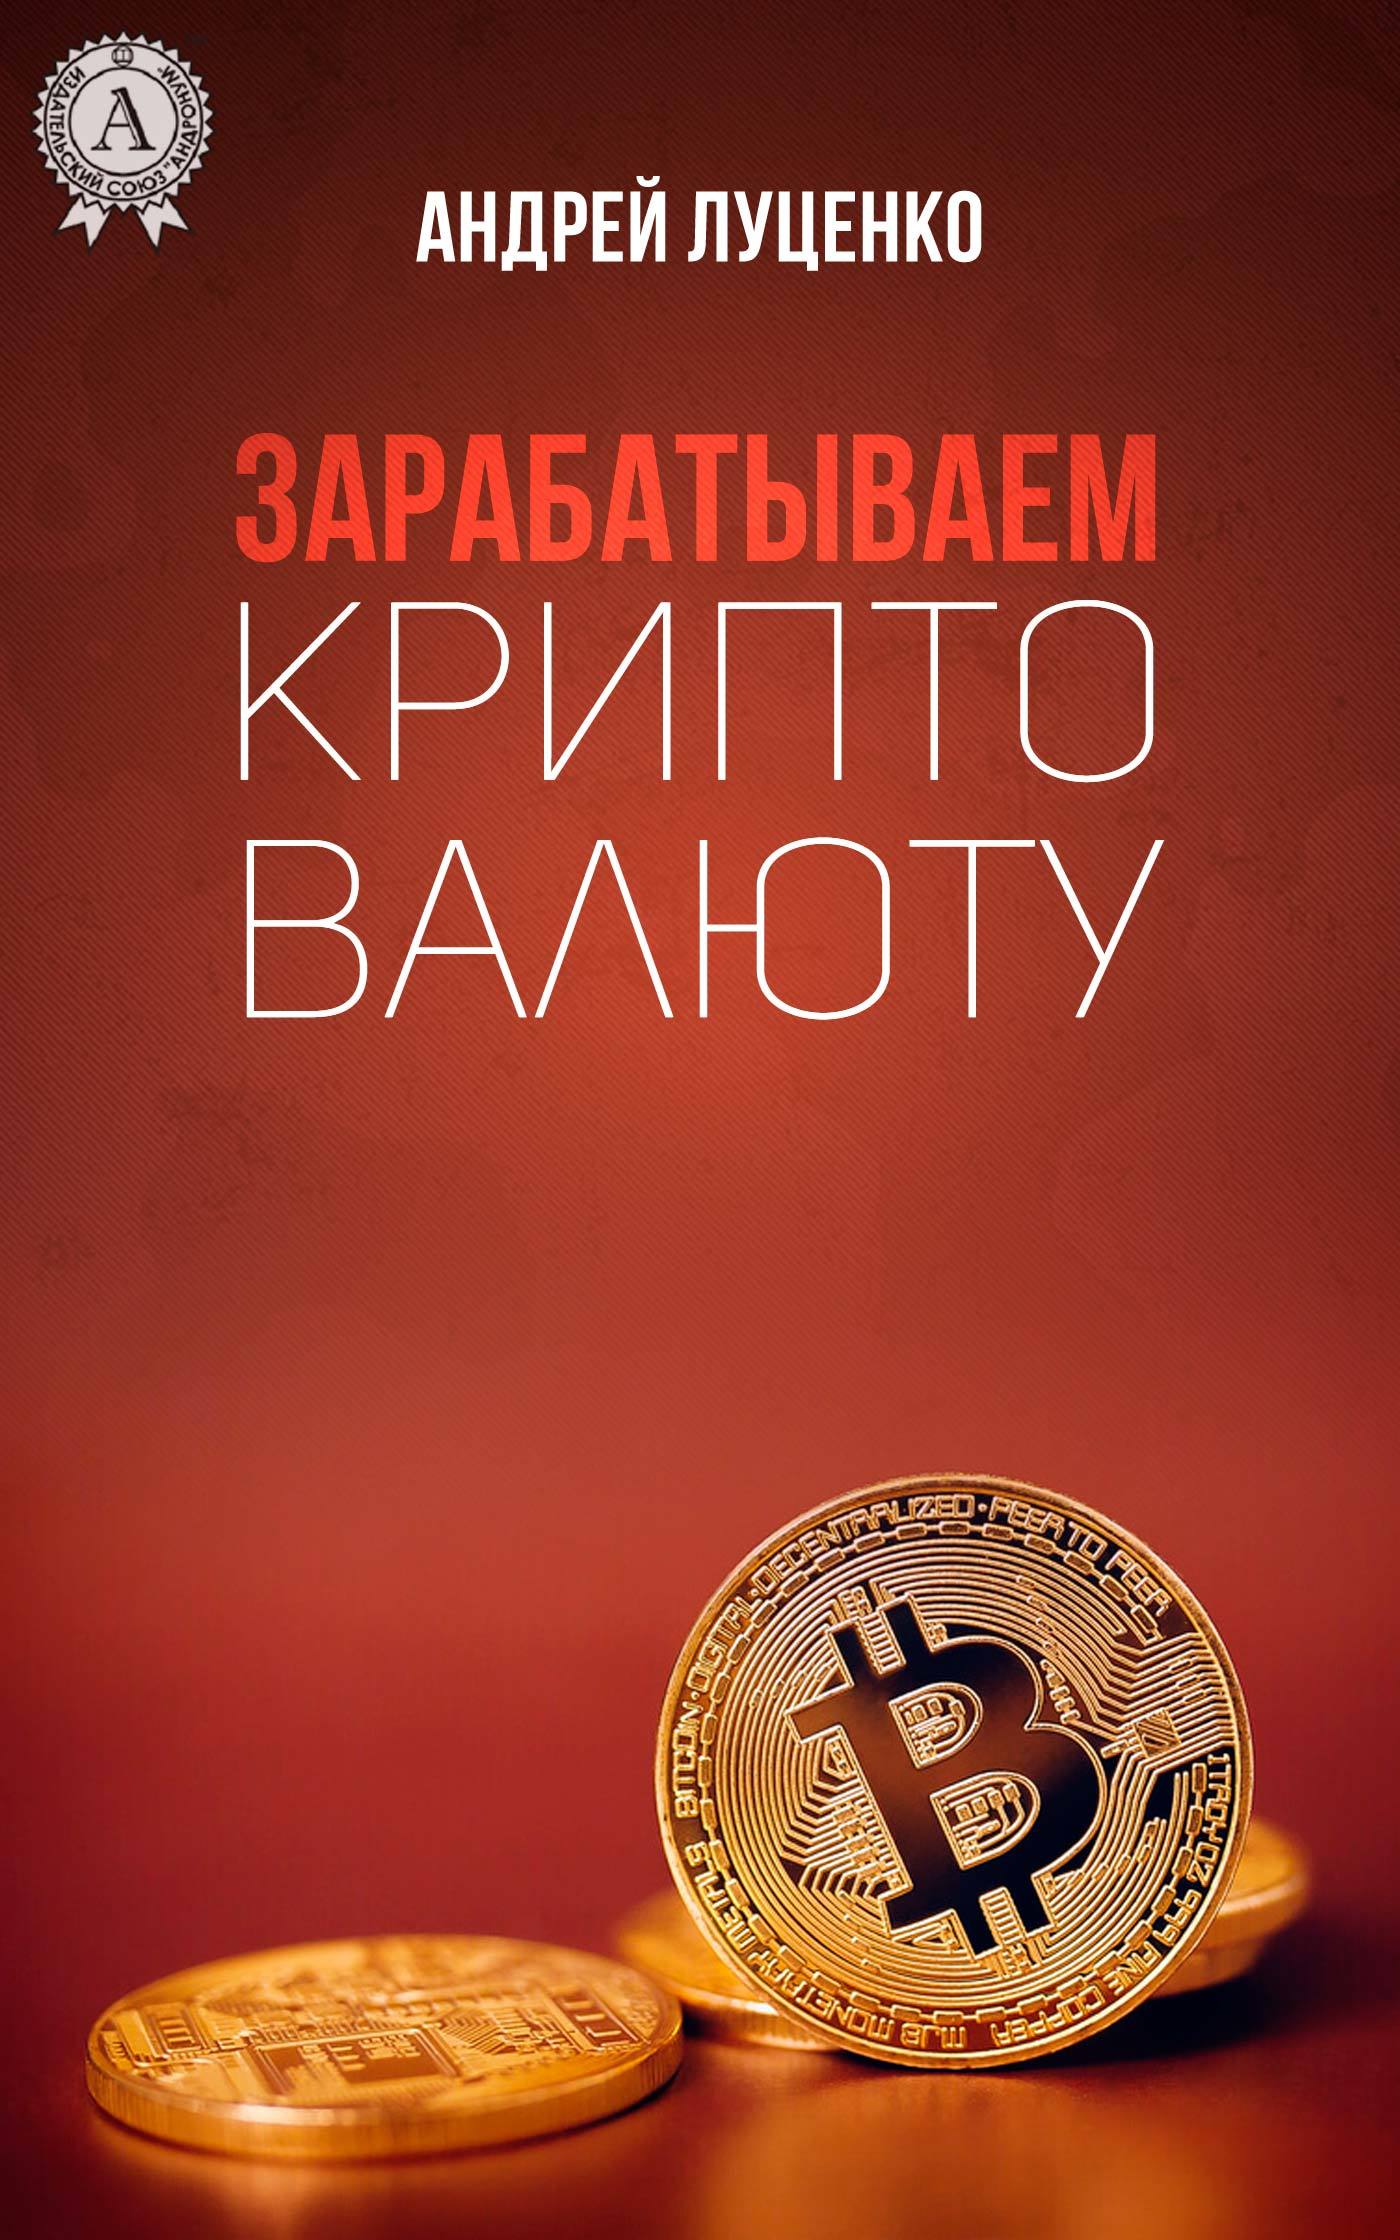 Книга Зарабатываем криптовалюту из серии , созданная Андрей Луценко, может относится к жанру Ценные бумаги, инвестиции, Личные финансы. Стоимость электронной книги Зарабатываем криптовалюту с идентификатором 31256512 составляет 299.00 руб.